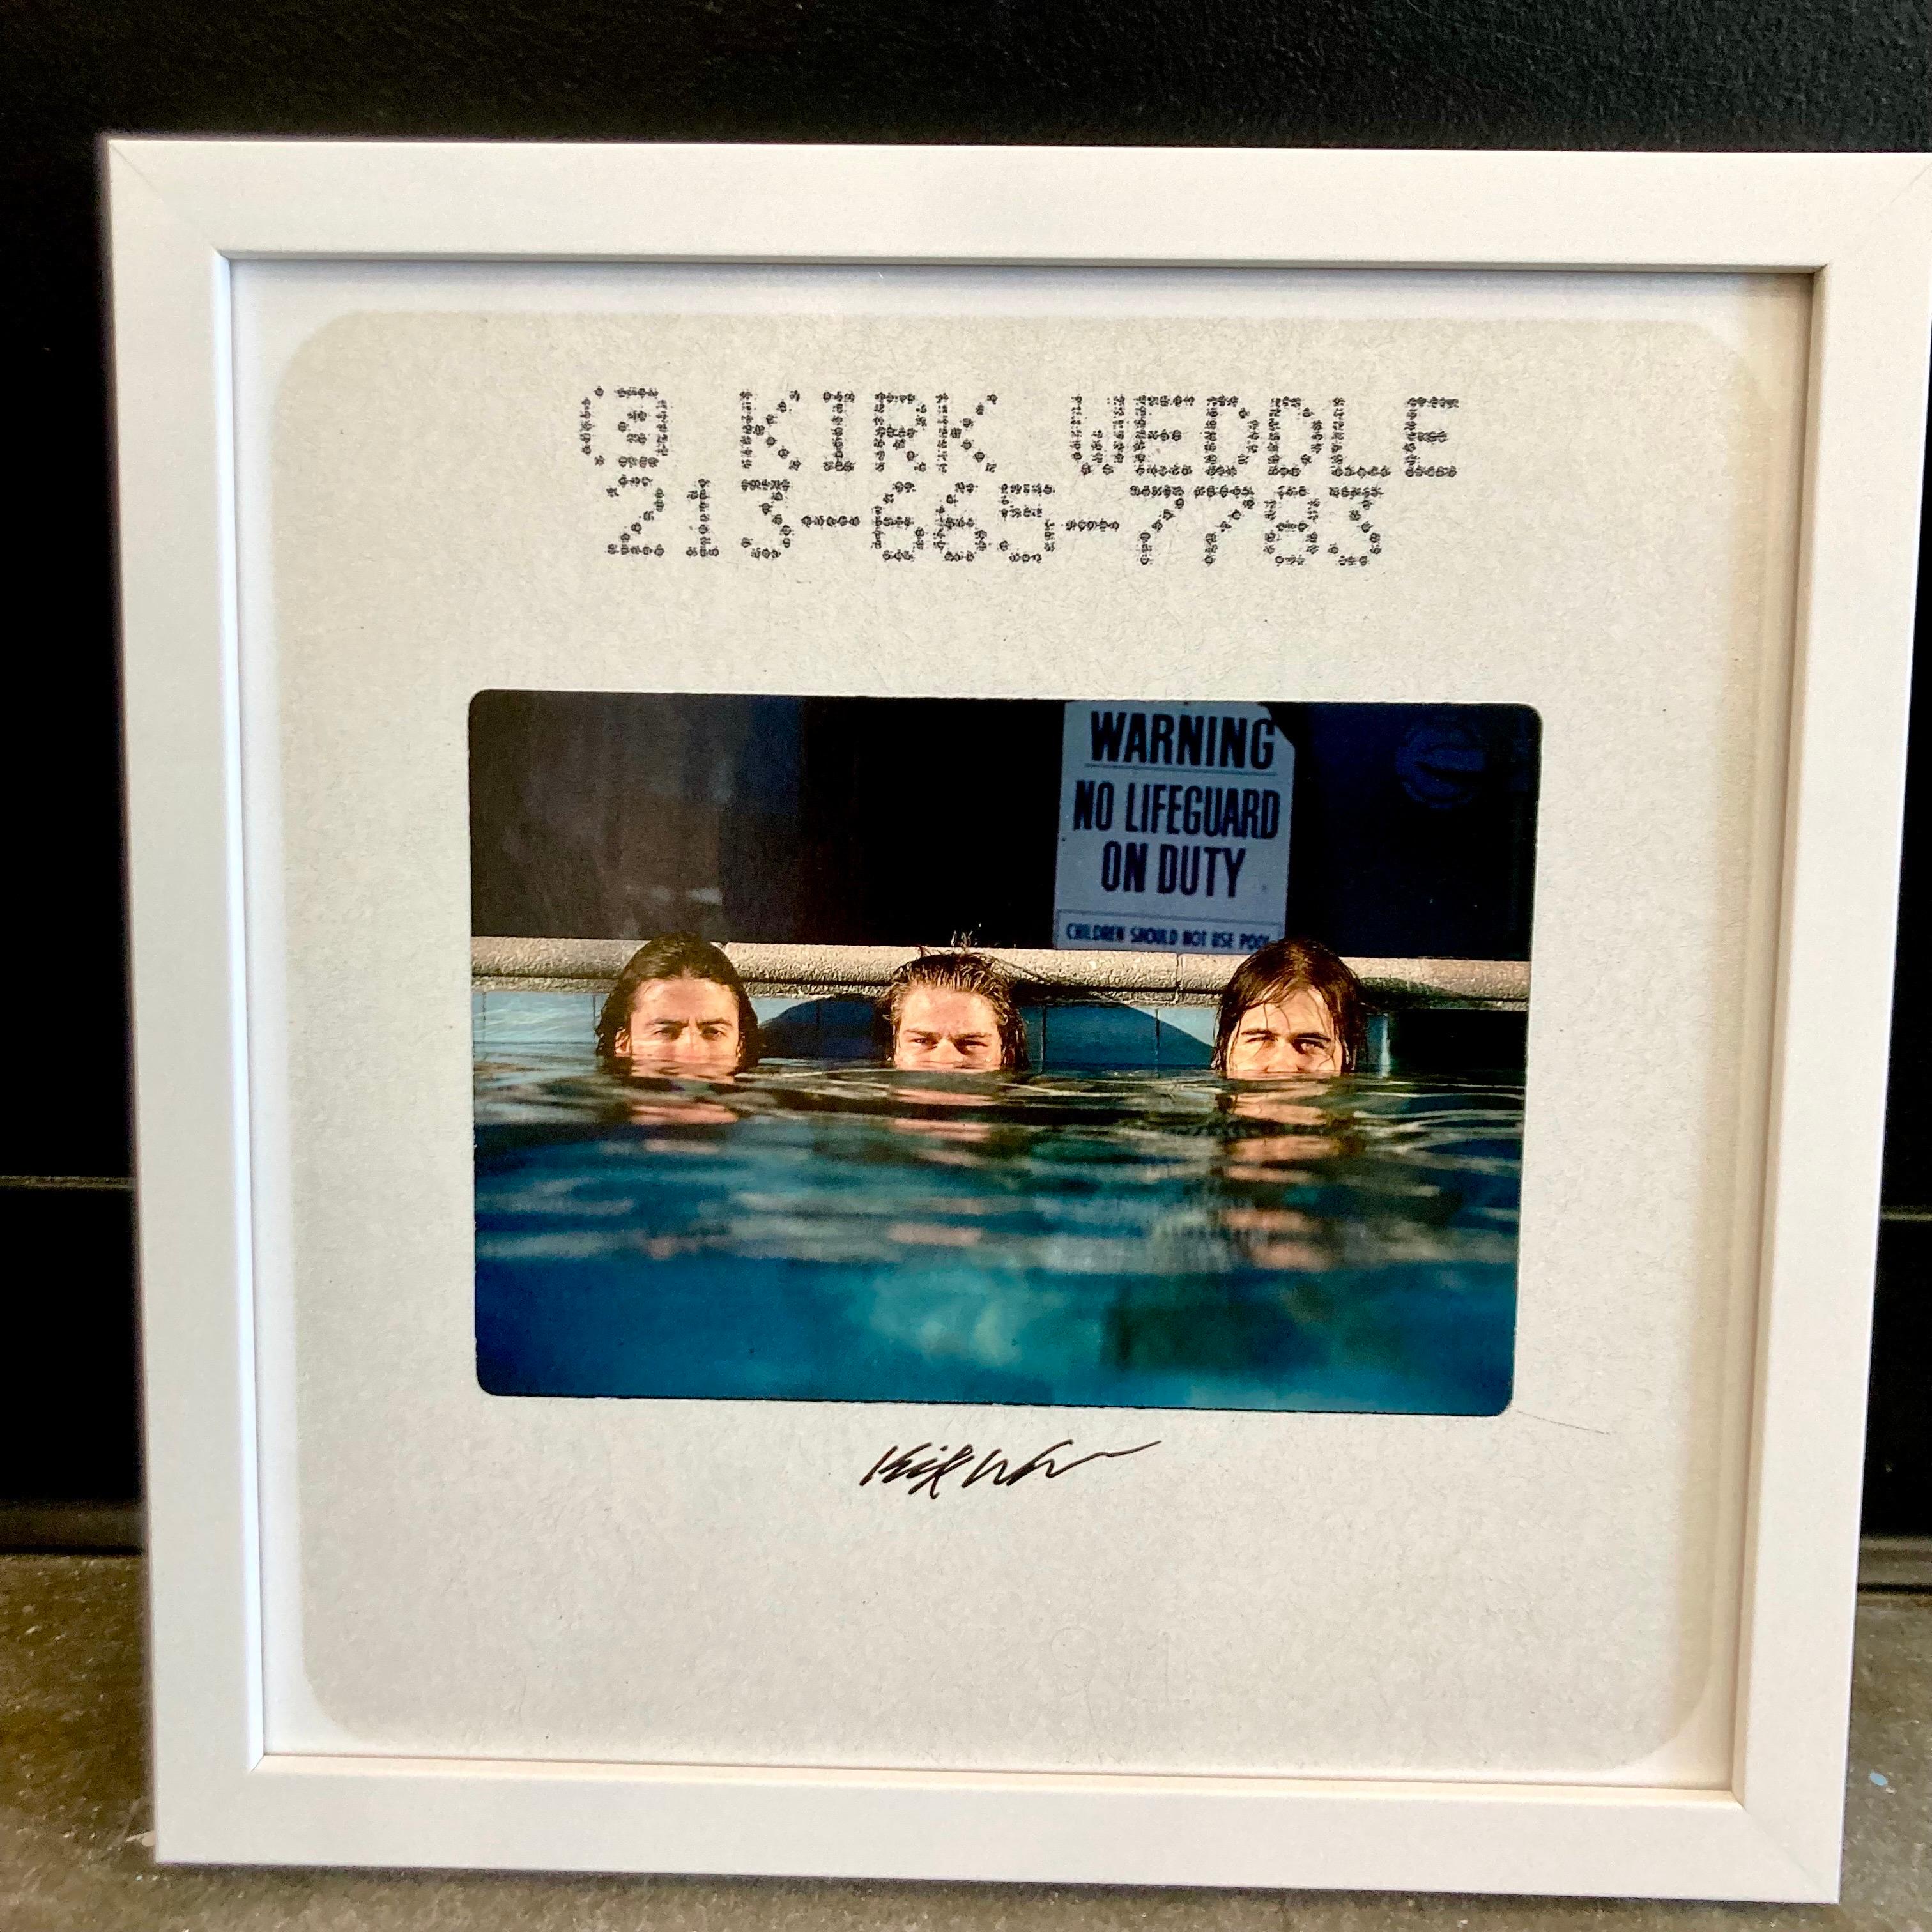 Signierter Farbdia-Abzug von Nirvana, aufgenommen von Kirk Weddle während seiner Session mit der Band im Pool zur Promotion des bahnbrechenden Albums "Nevermind" von 1991.

Dies ist ein von Kirk Weddle aufgenommenes Foto des Original-Farbdias,